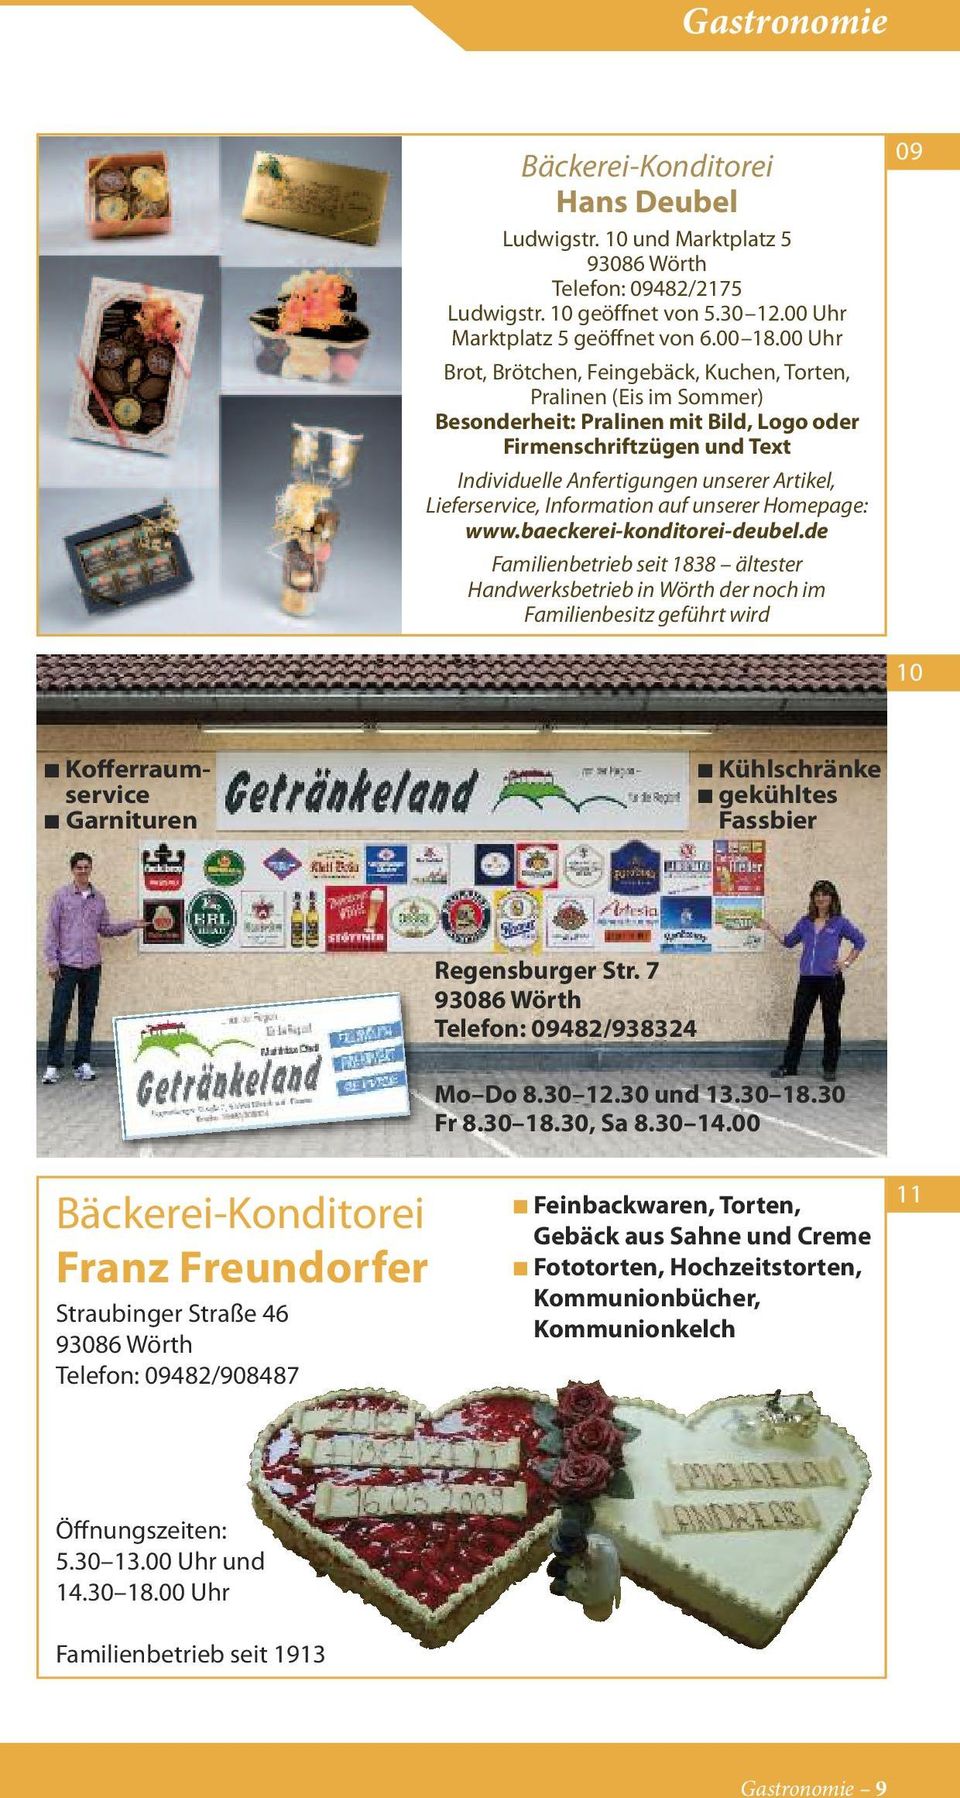 Lieferservice, Information auf unserer Homepage: www.baeckerei-konditorei-deubel.